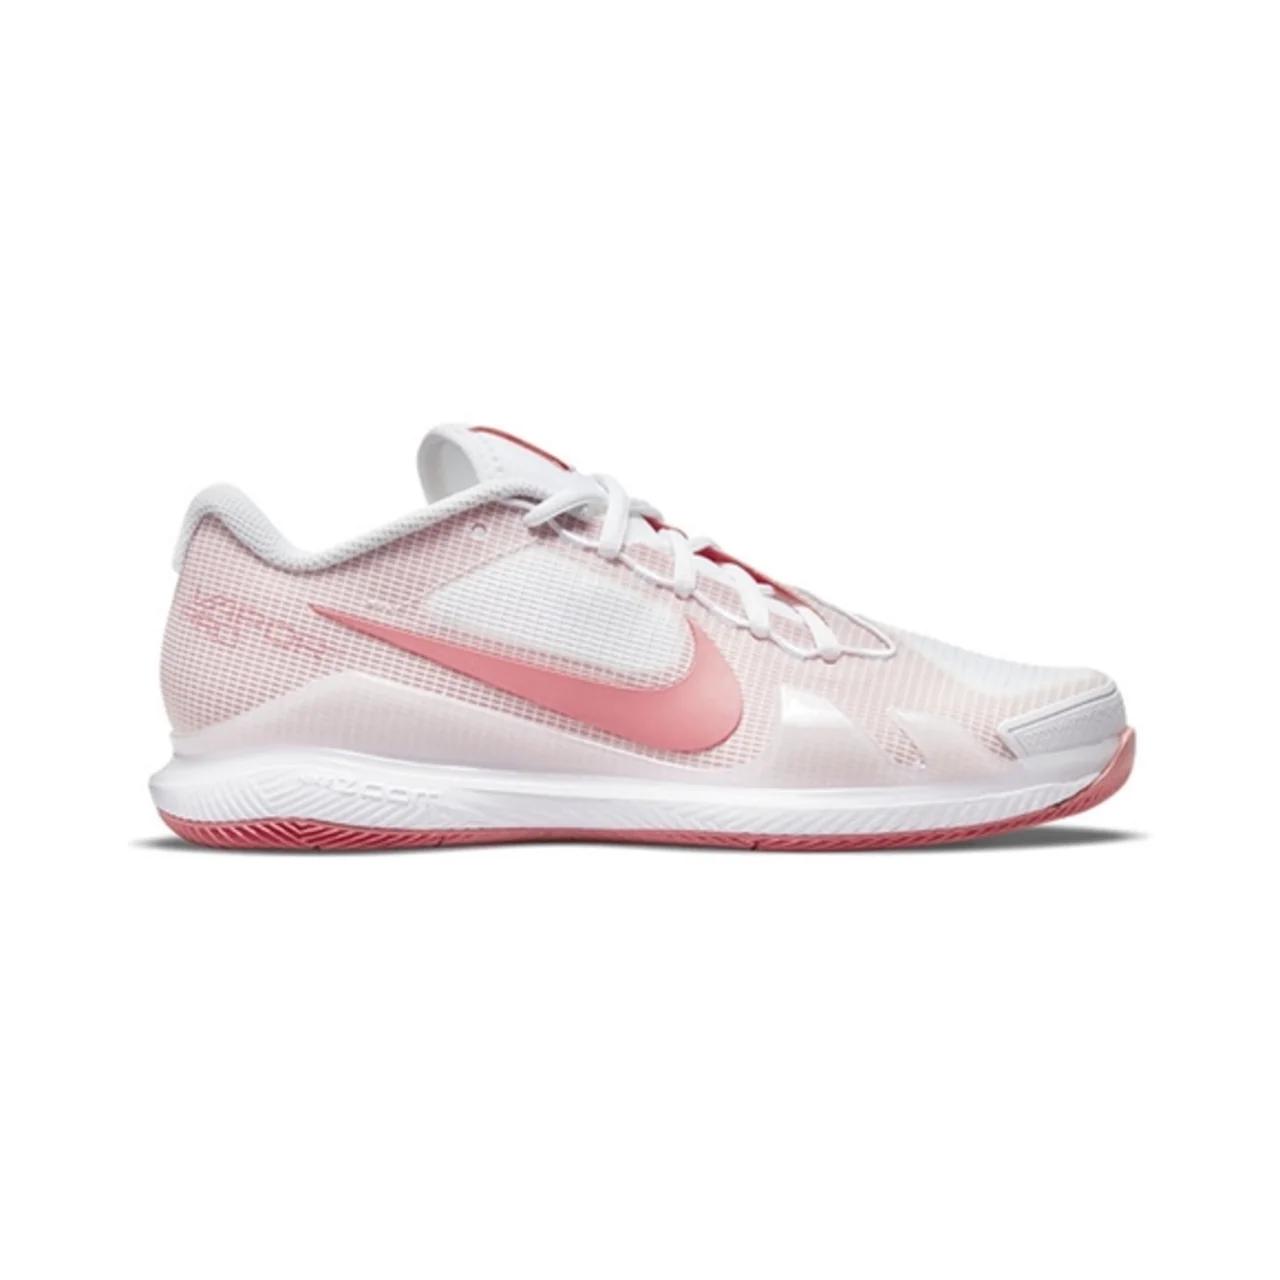 Nike Air Zoom Vapor Pro Tennis/Padel White/University Red